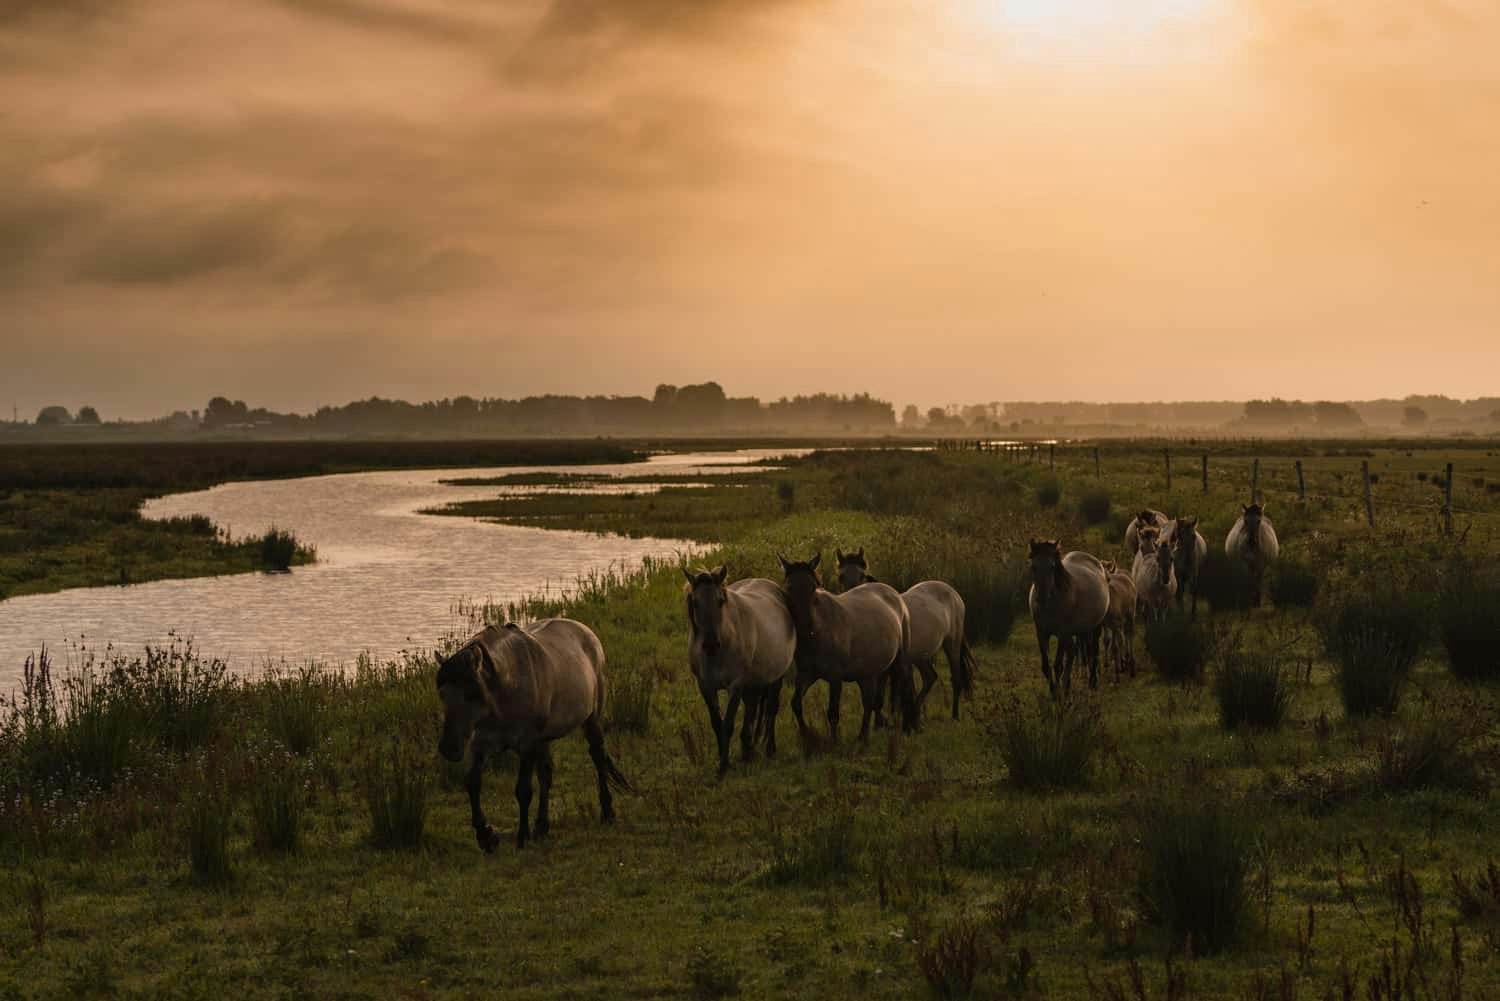 wilde paarden spotten in nederland